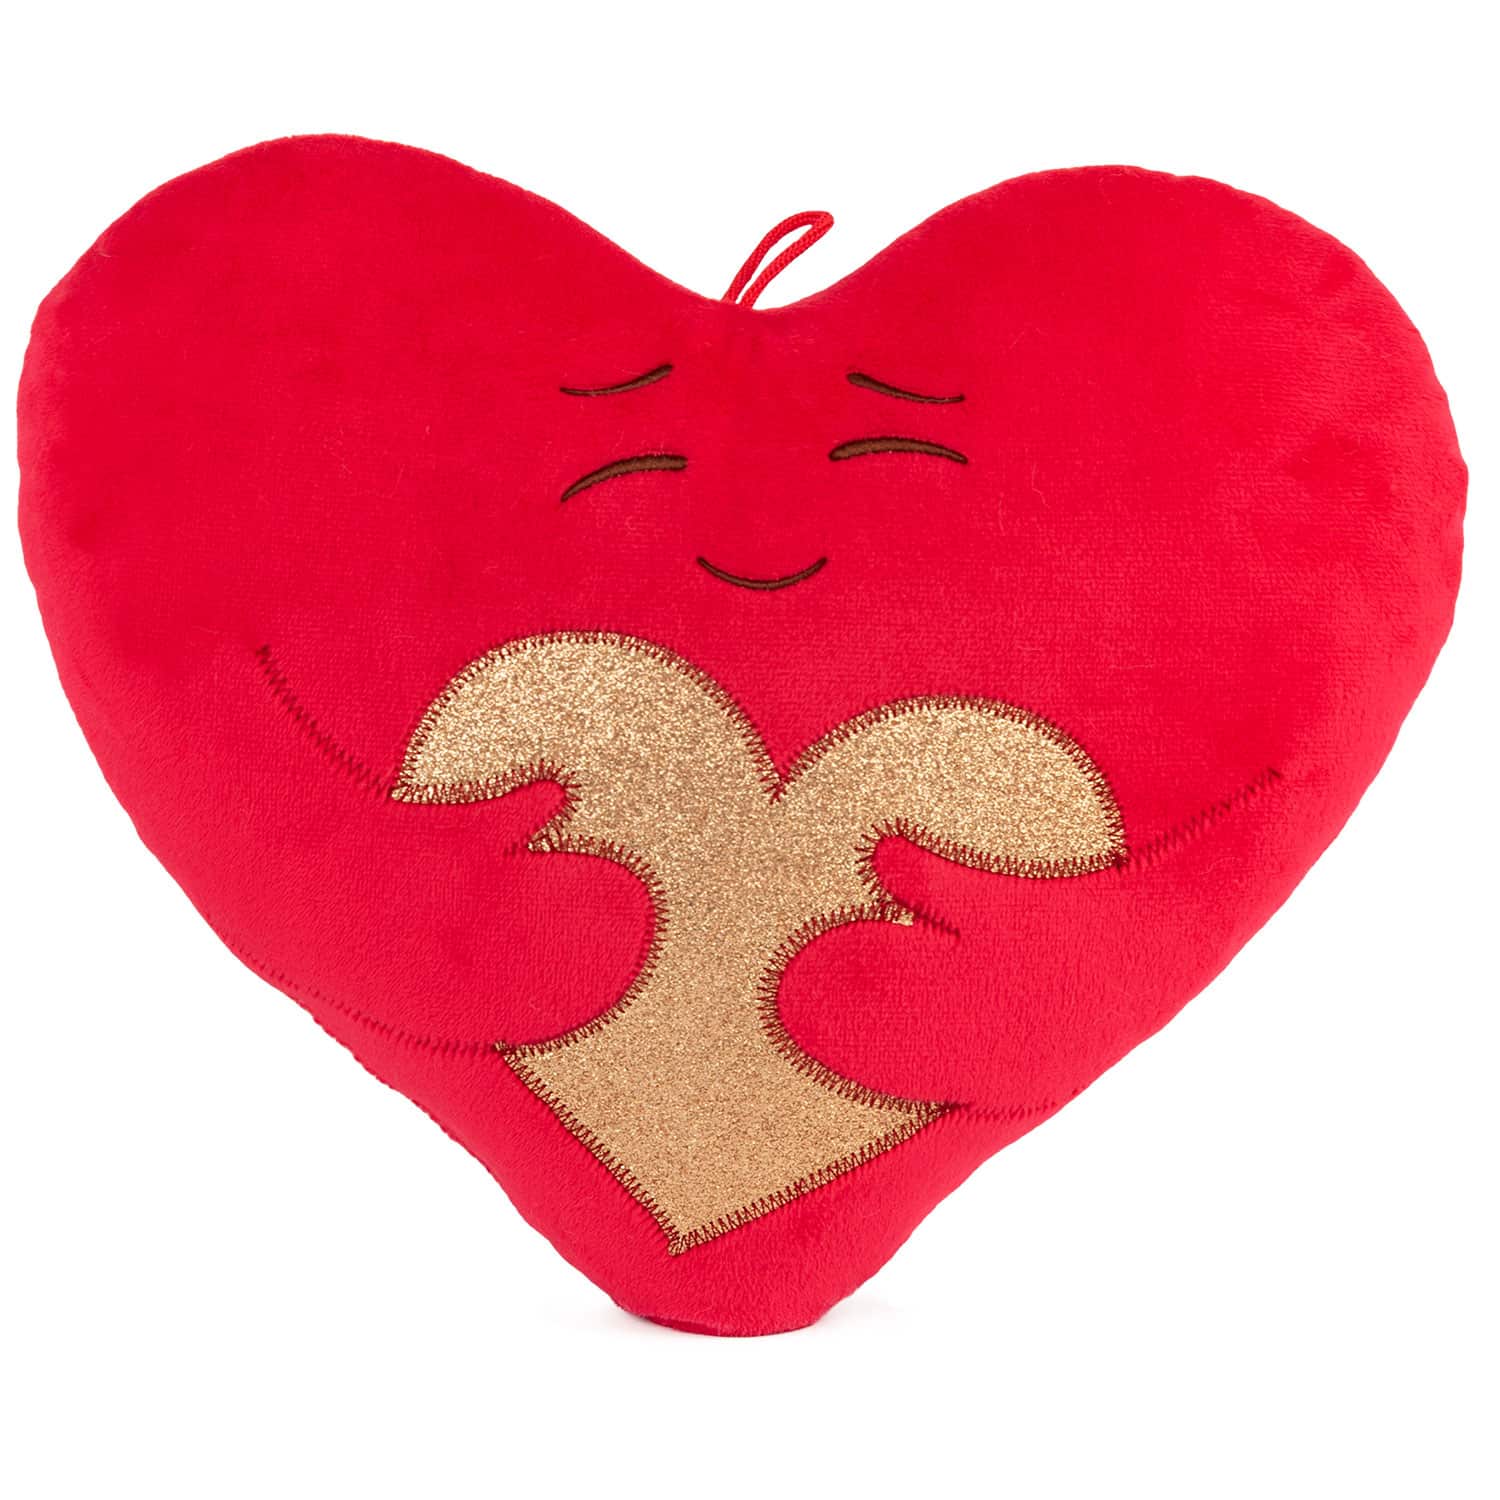 Heart emoticon - Hug